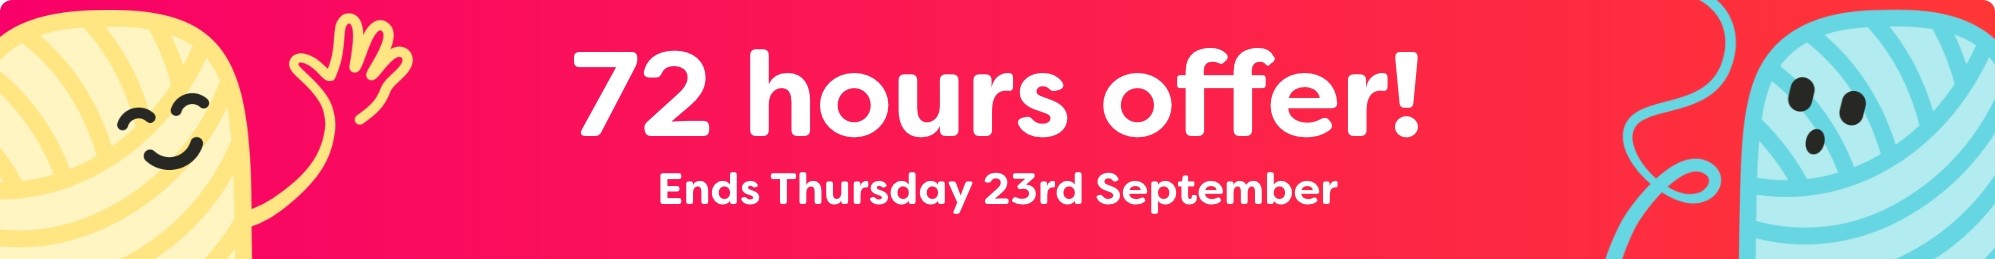 72 hours offer - Ends Thursday!